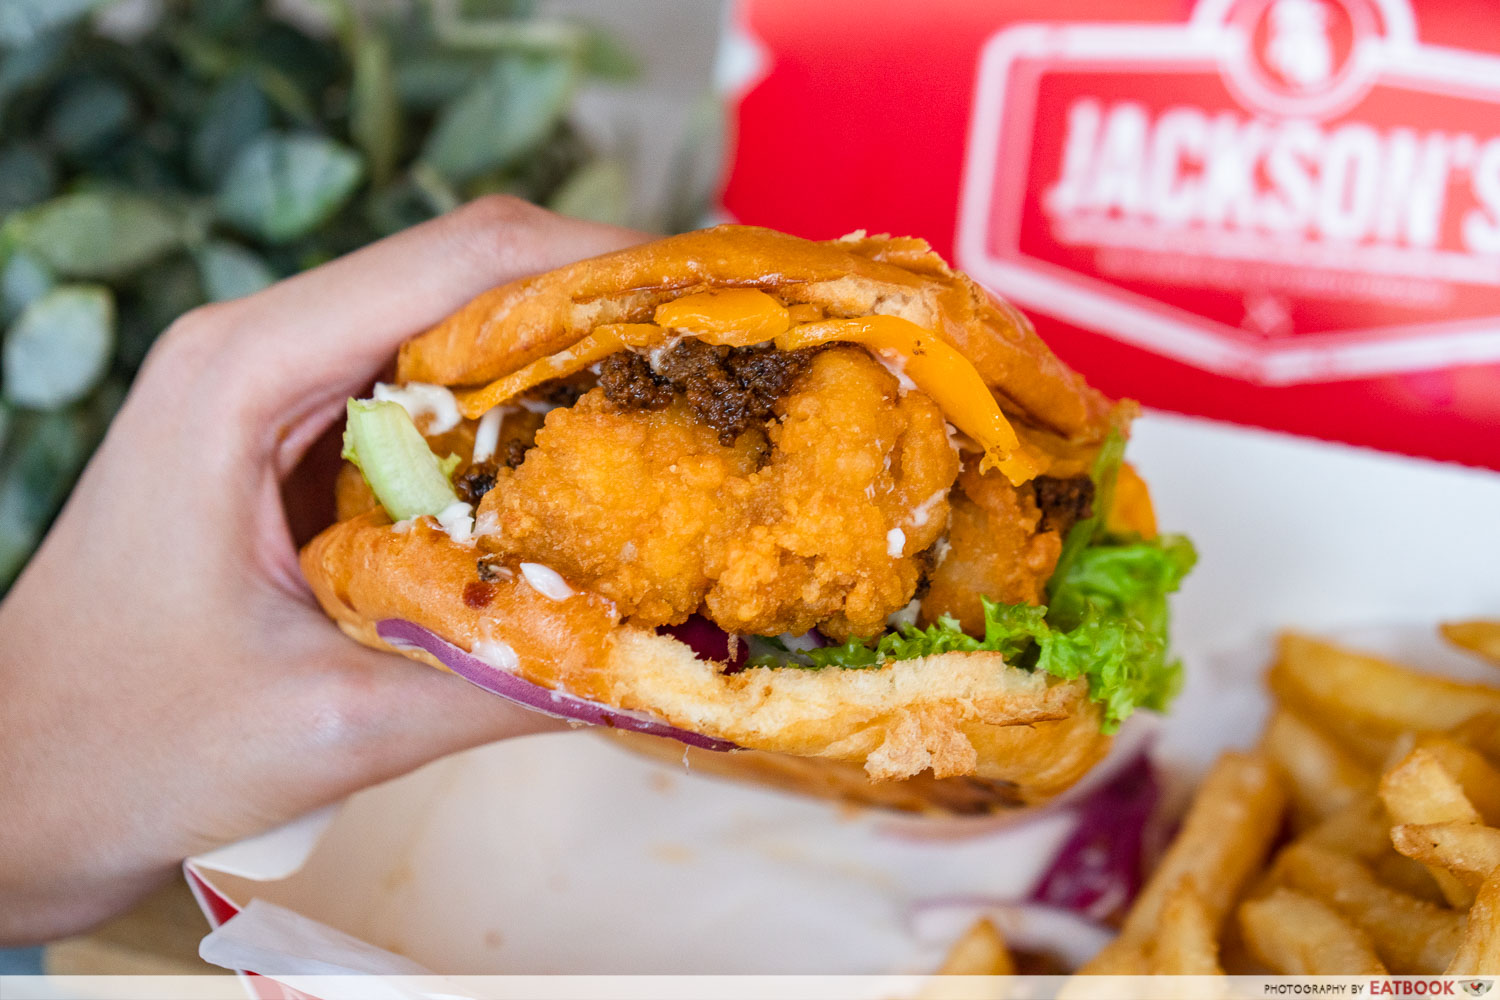 jackson's fried chicken - fried chicken burger